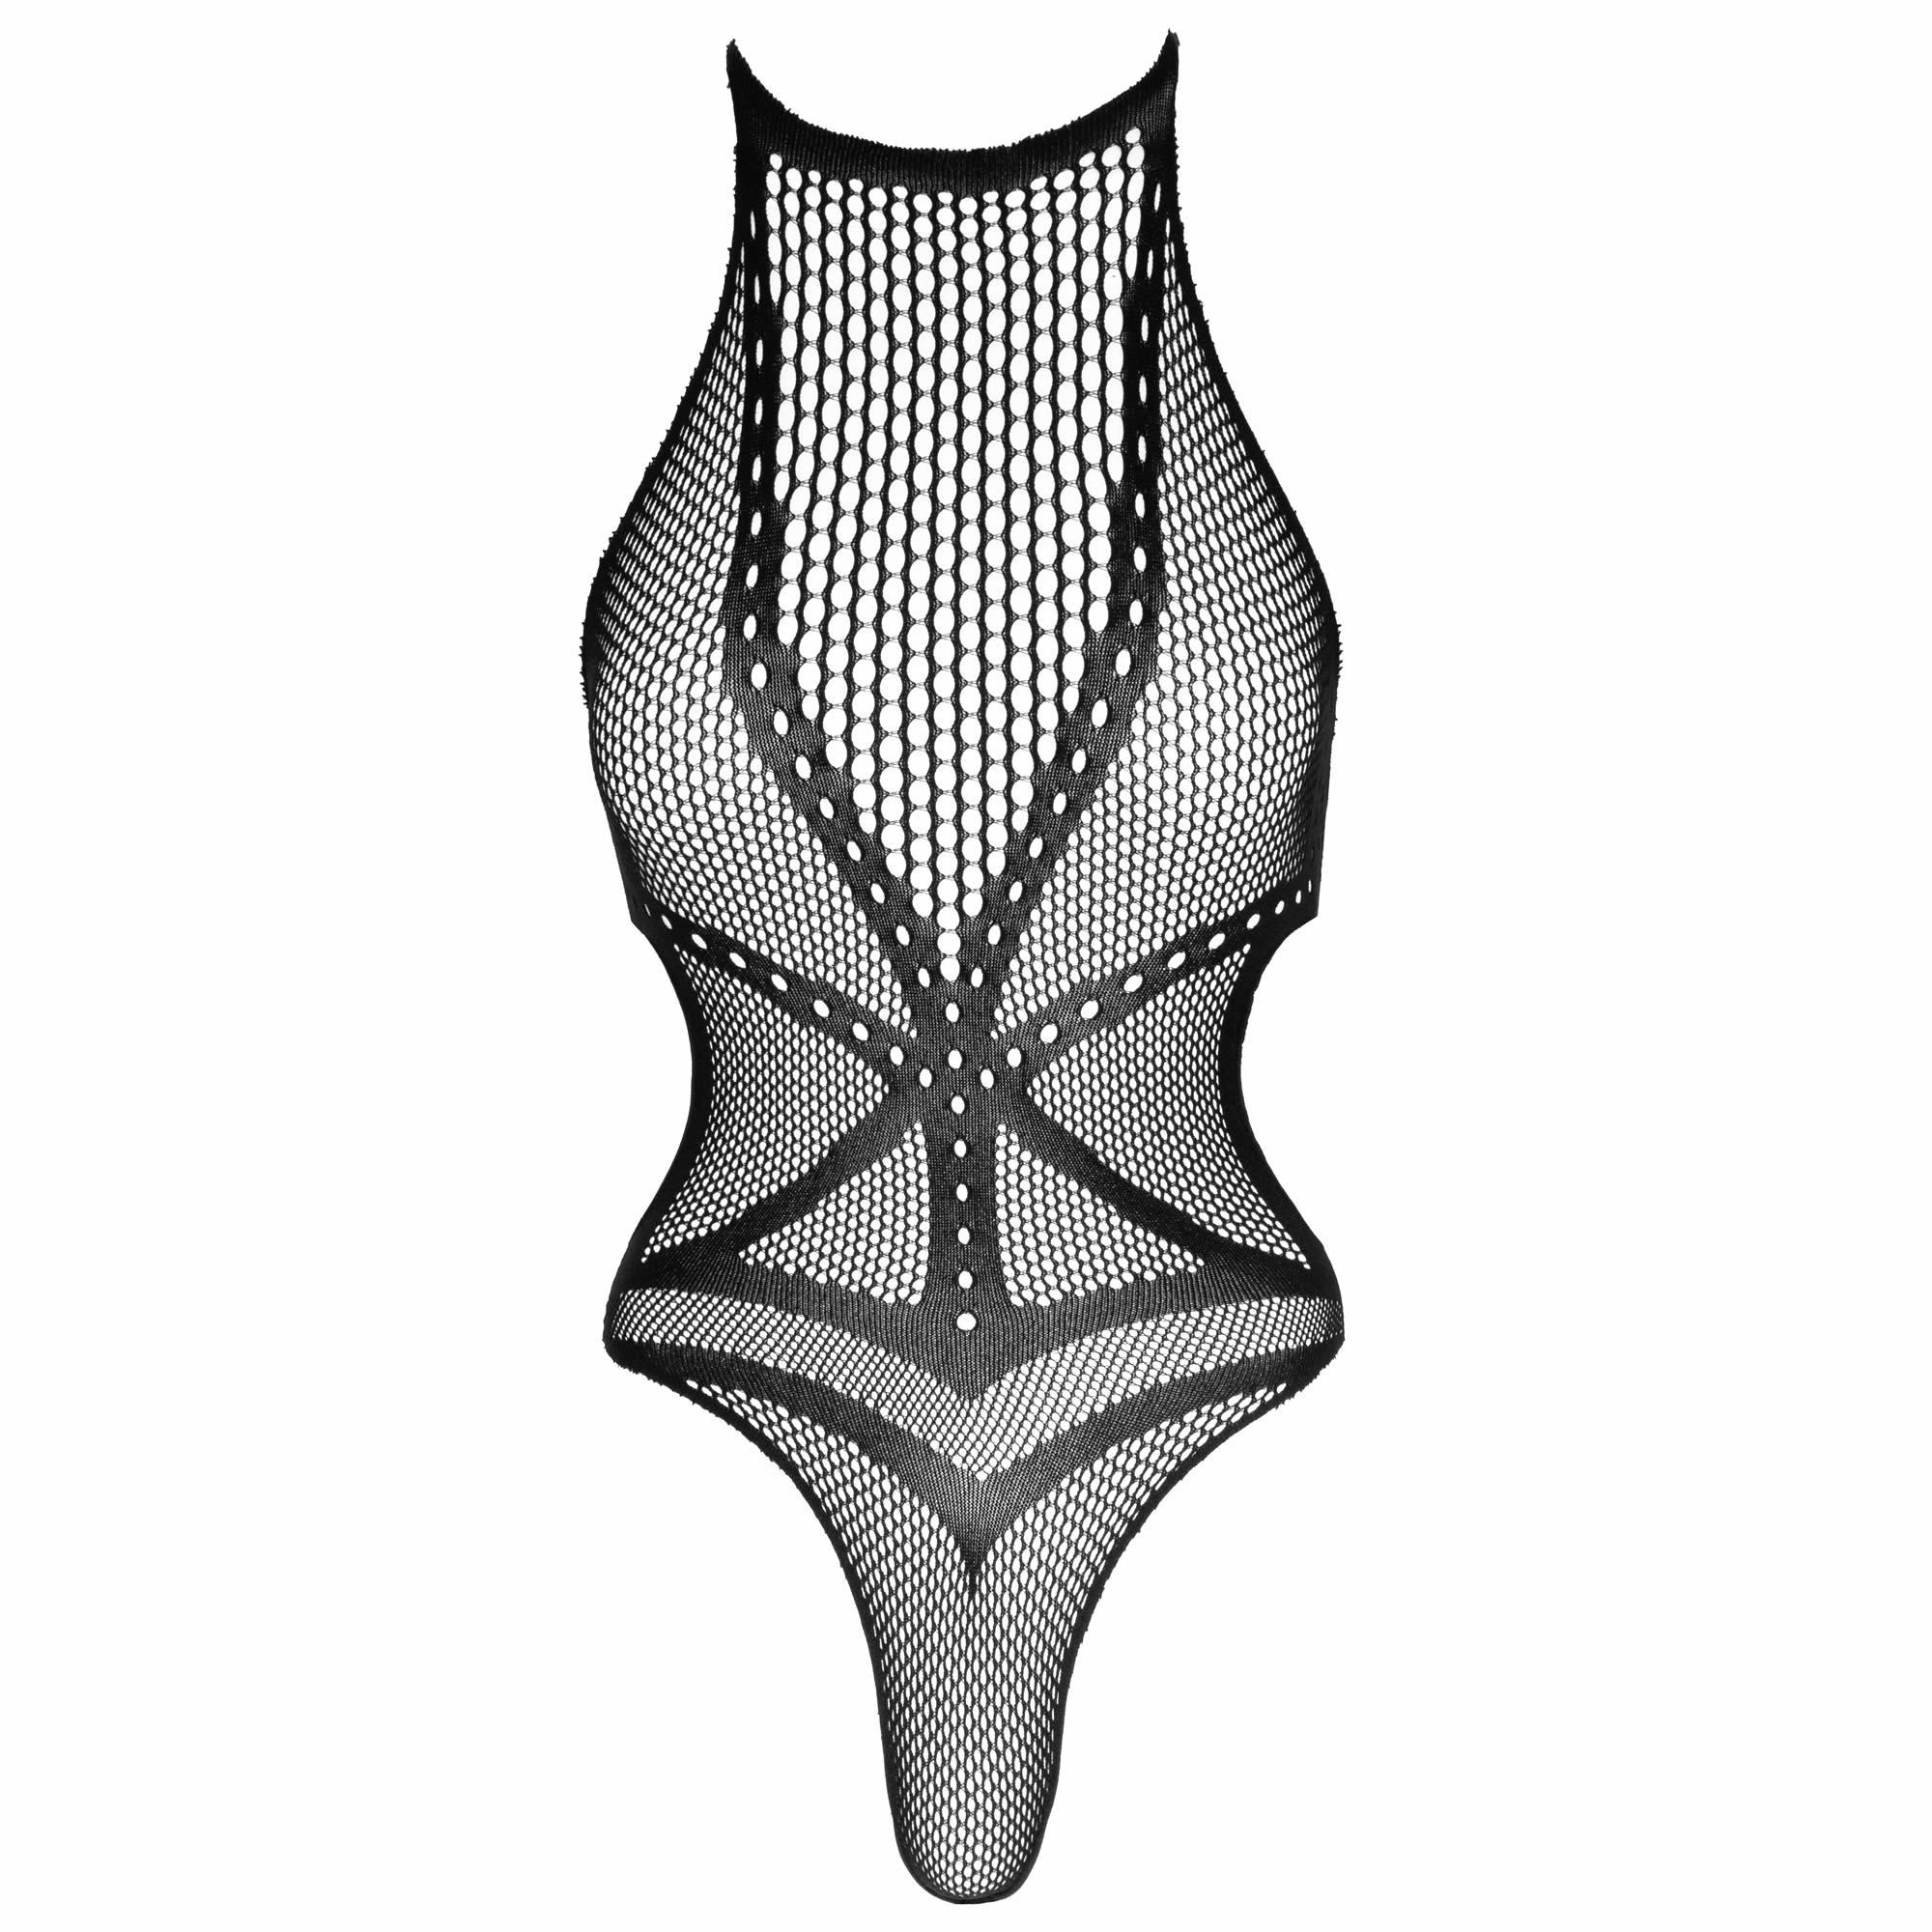 Køb NOXQSE Net Body med Harness Design